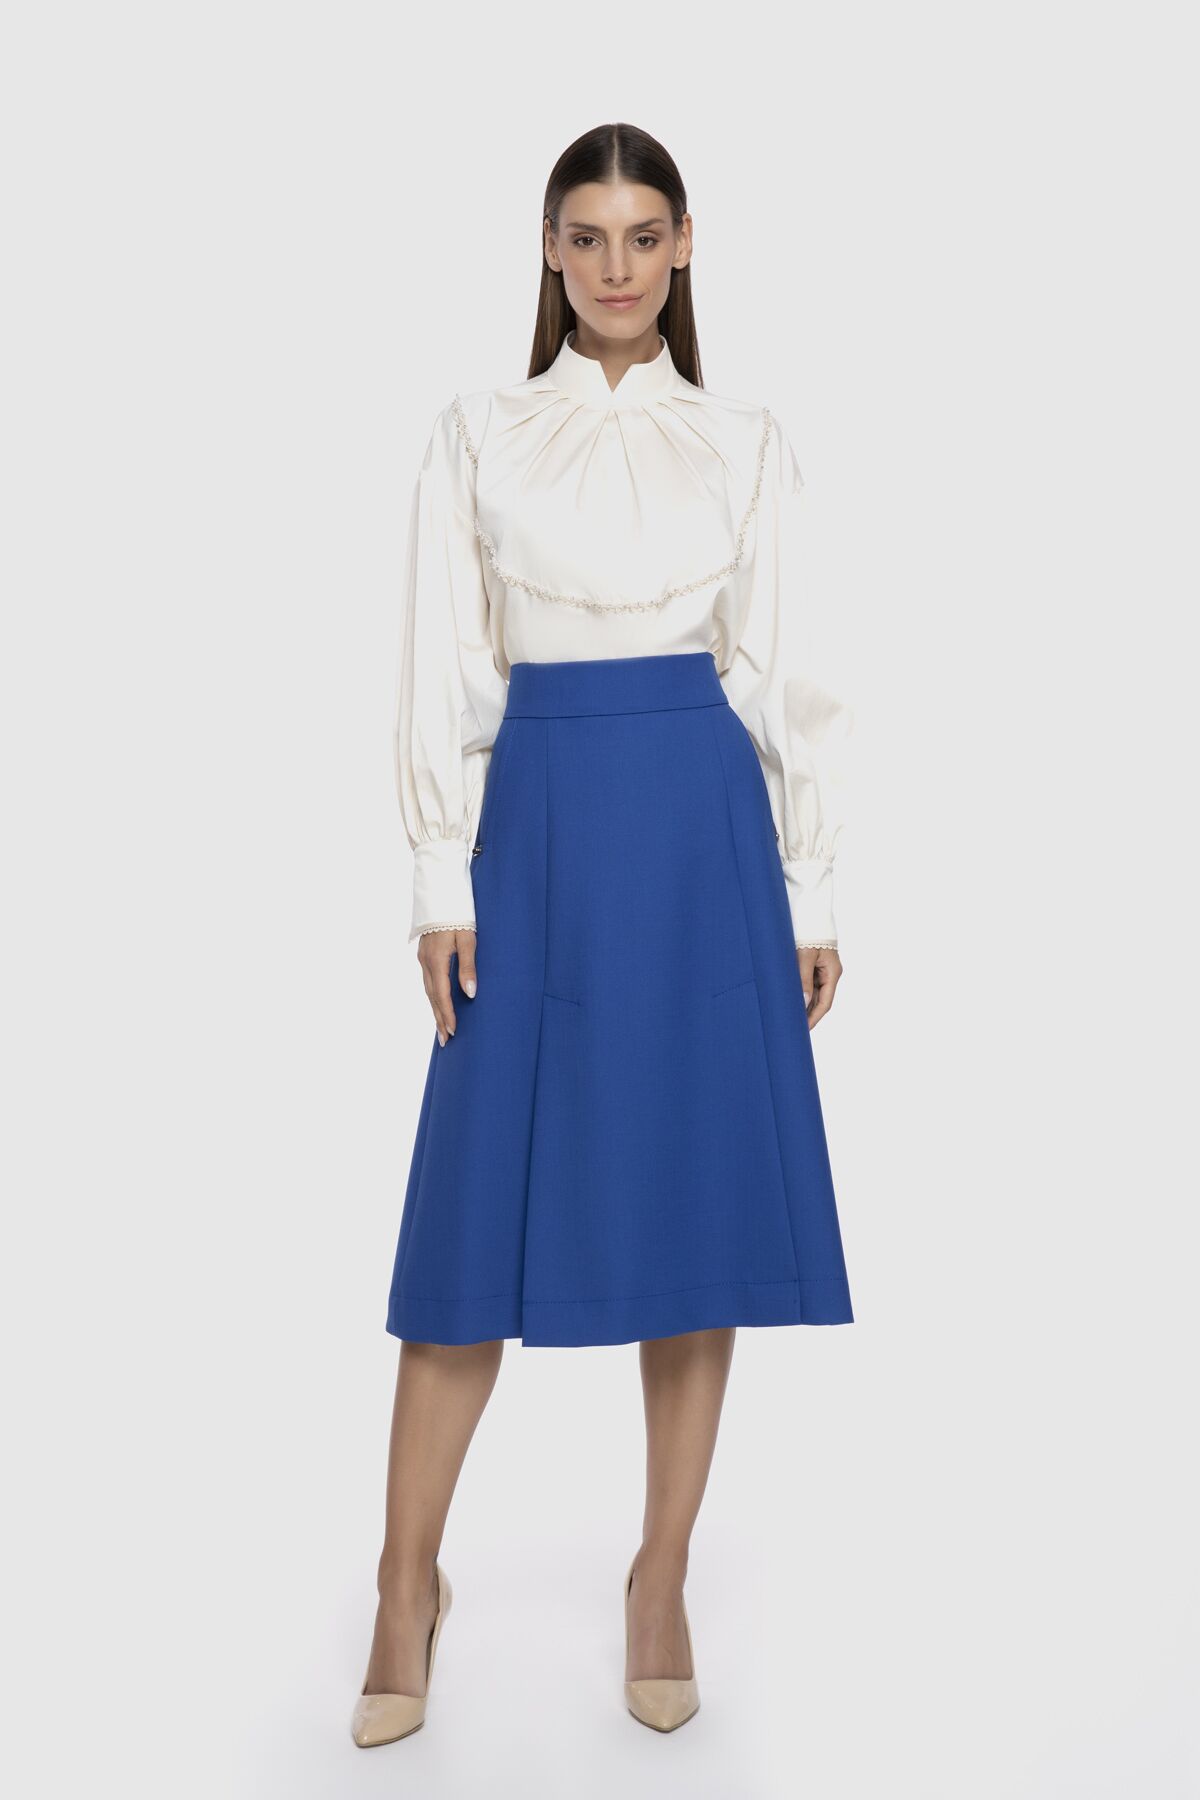  GIZIA - A Form Knee Length Blue Skirt